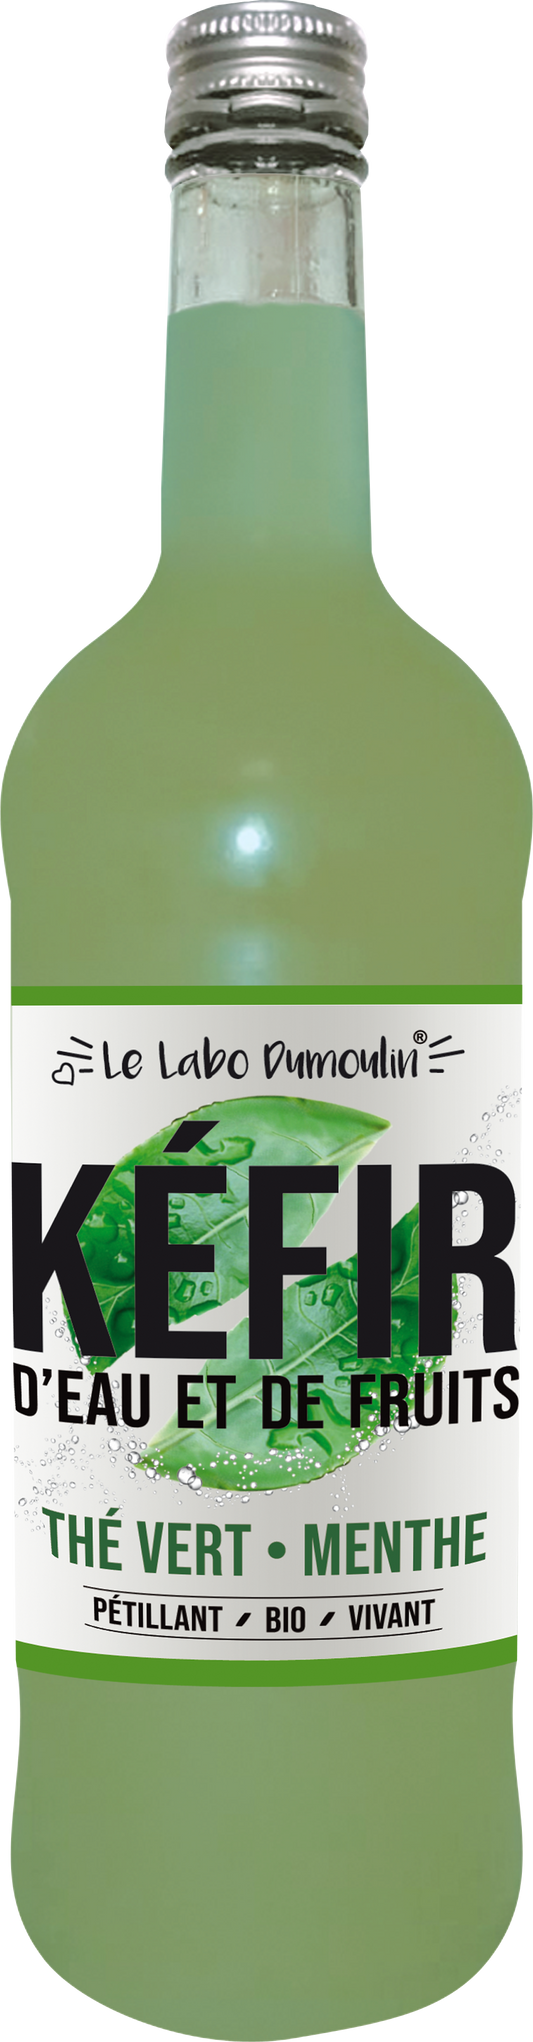 Le Labo Dumoulin -- Kéfir thé vert menthe bio (frais) - 75 cl x 6